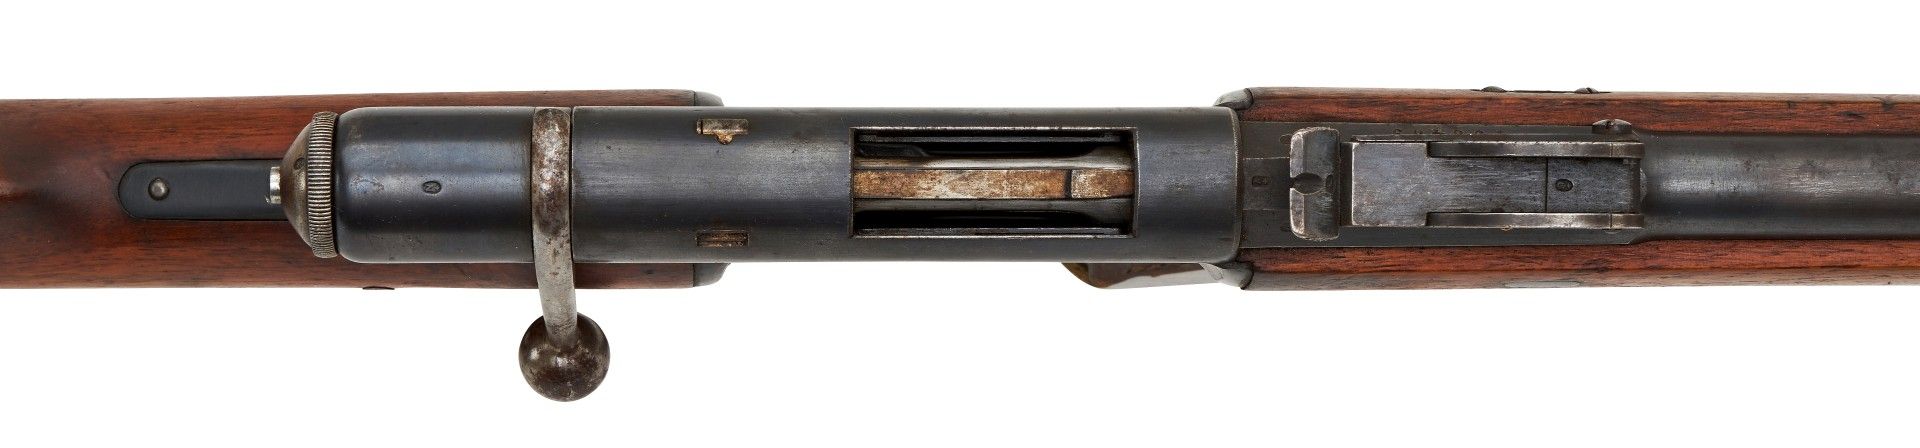 Gewehr M. 78 (Vetterli - Gewehr) Kal. 10,4 mm Swiss S.Nr. 198489 Herst.: Waffenfabrik Bern - Image 2 of 5